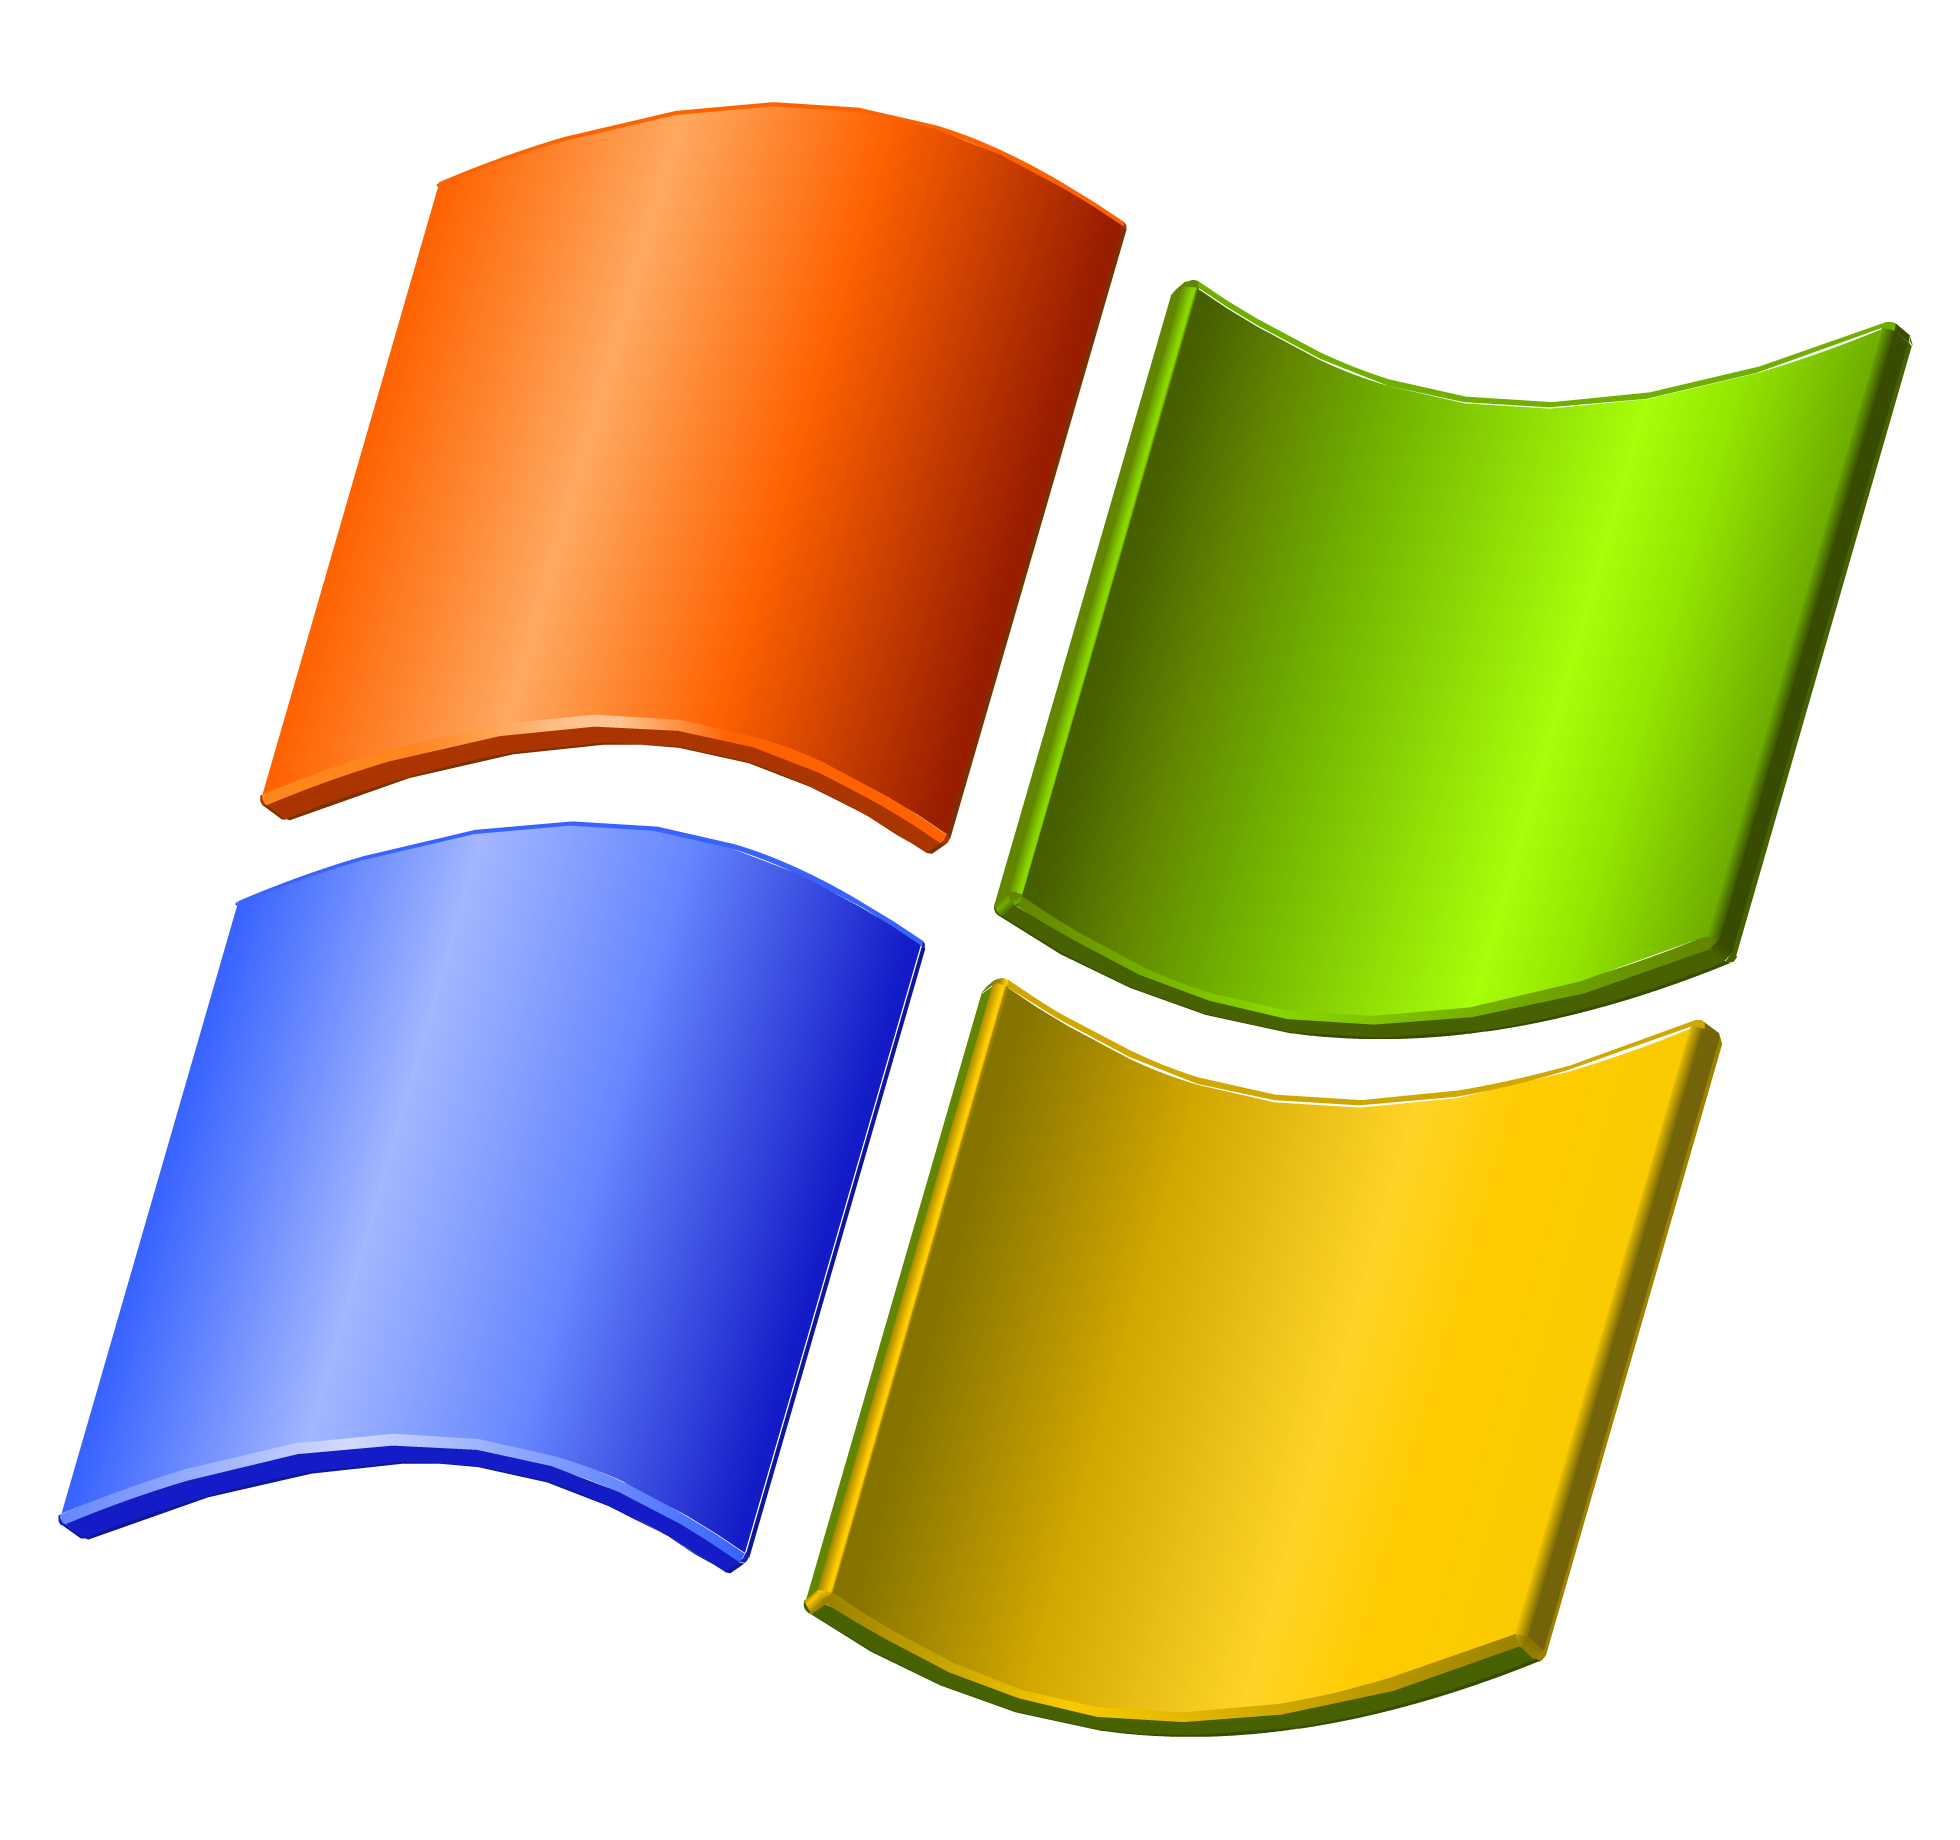 Windows_XP_2001.jpg